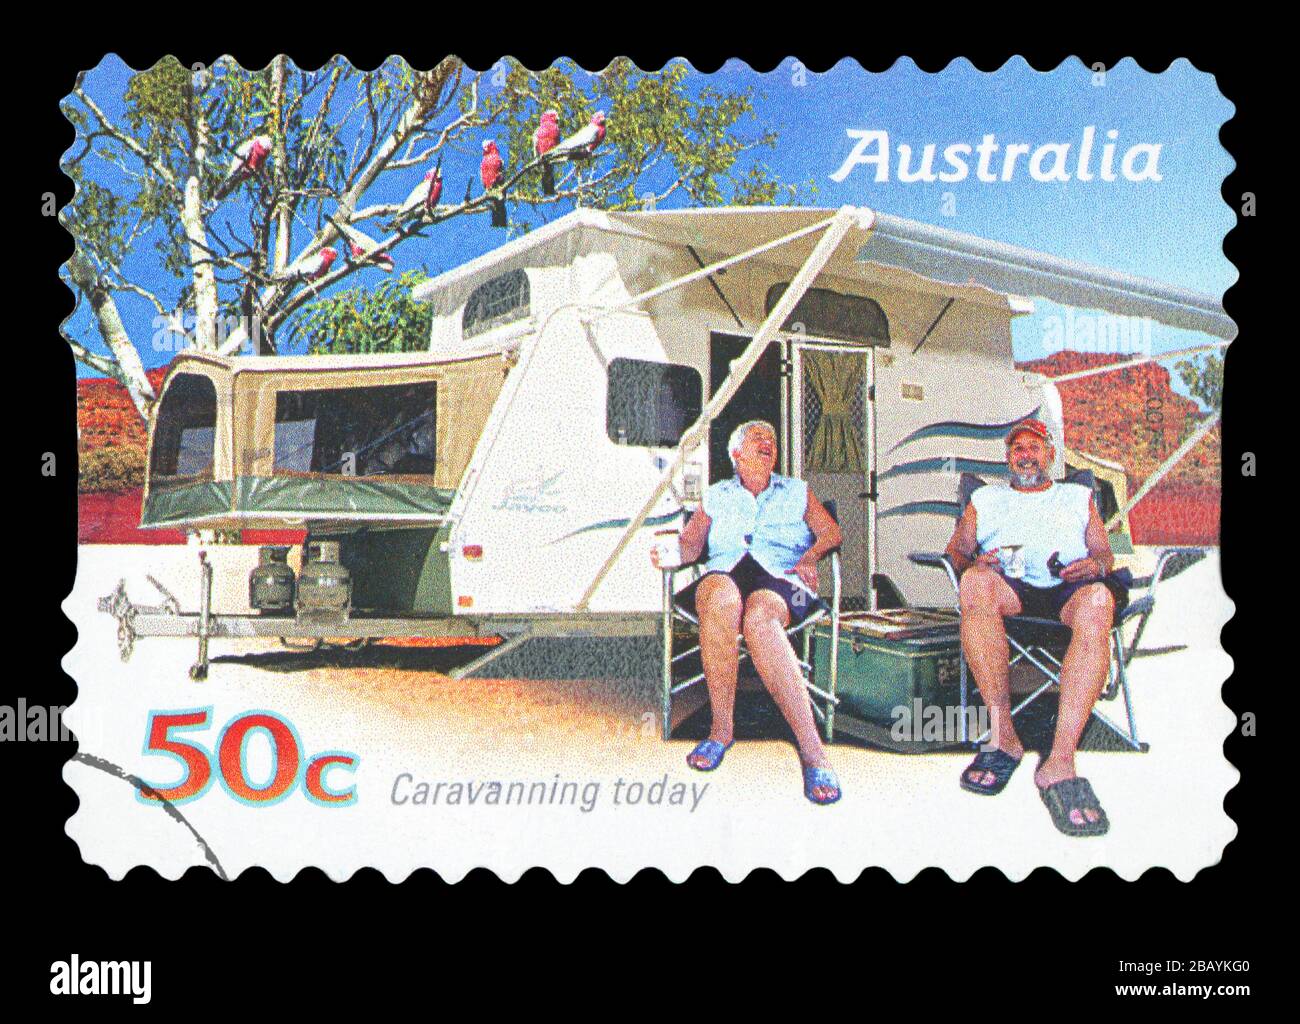 Australie - VERS 2007: Un timbre imprimé en Australie montre famille profitant d'une caravane, caravaning aujourd'hui, vers 2007 Banque D'Images